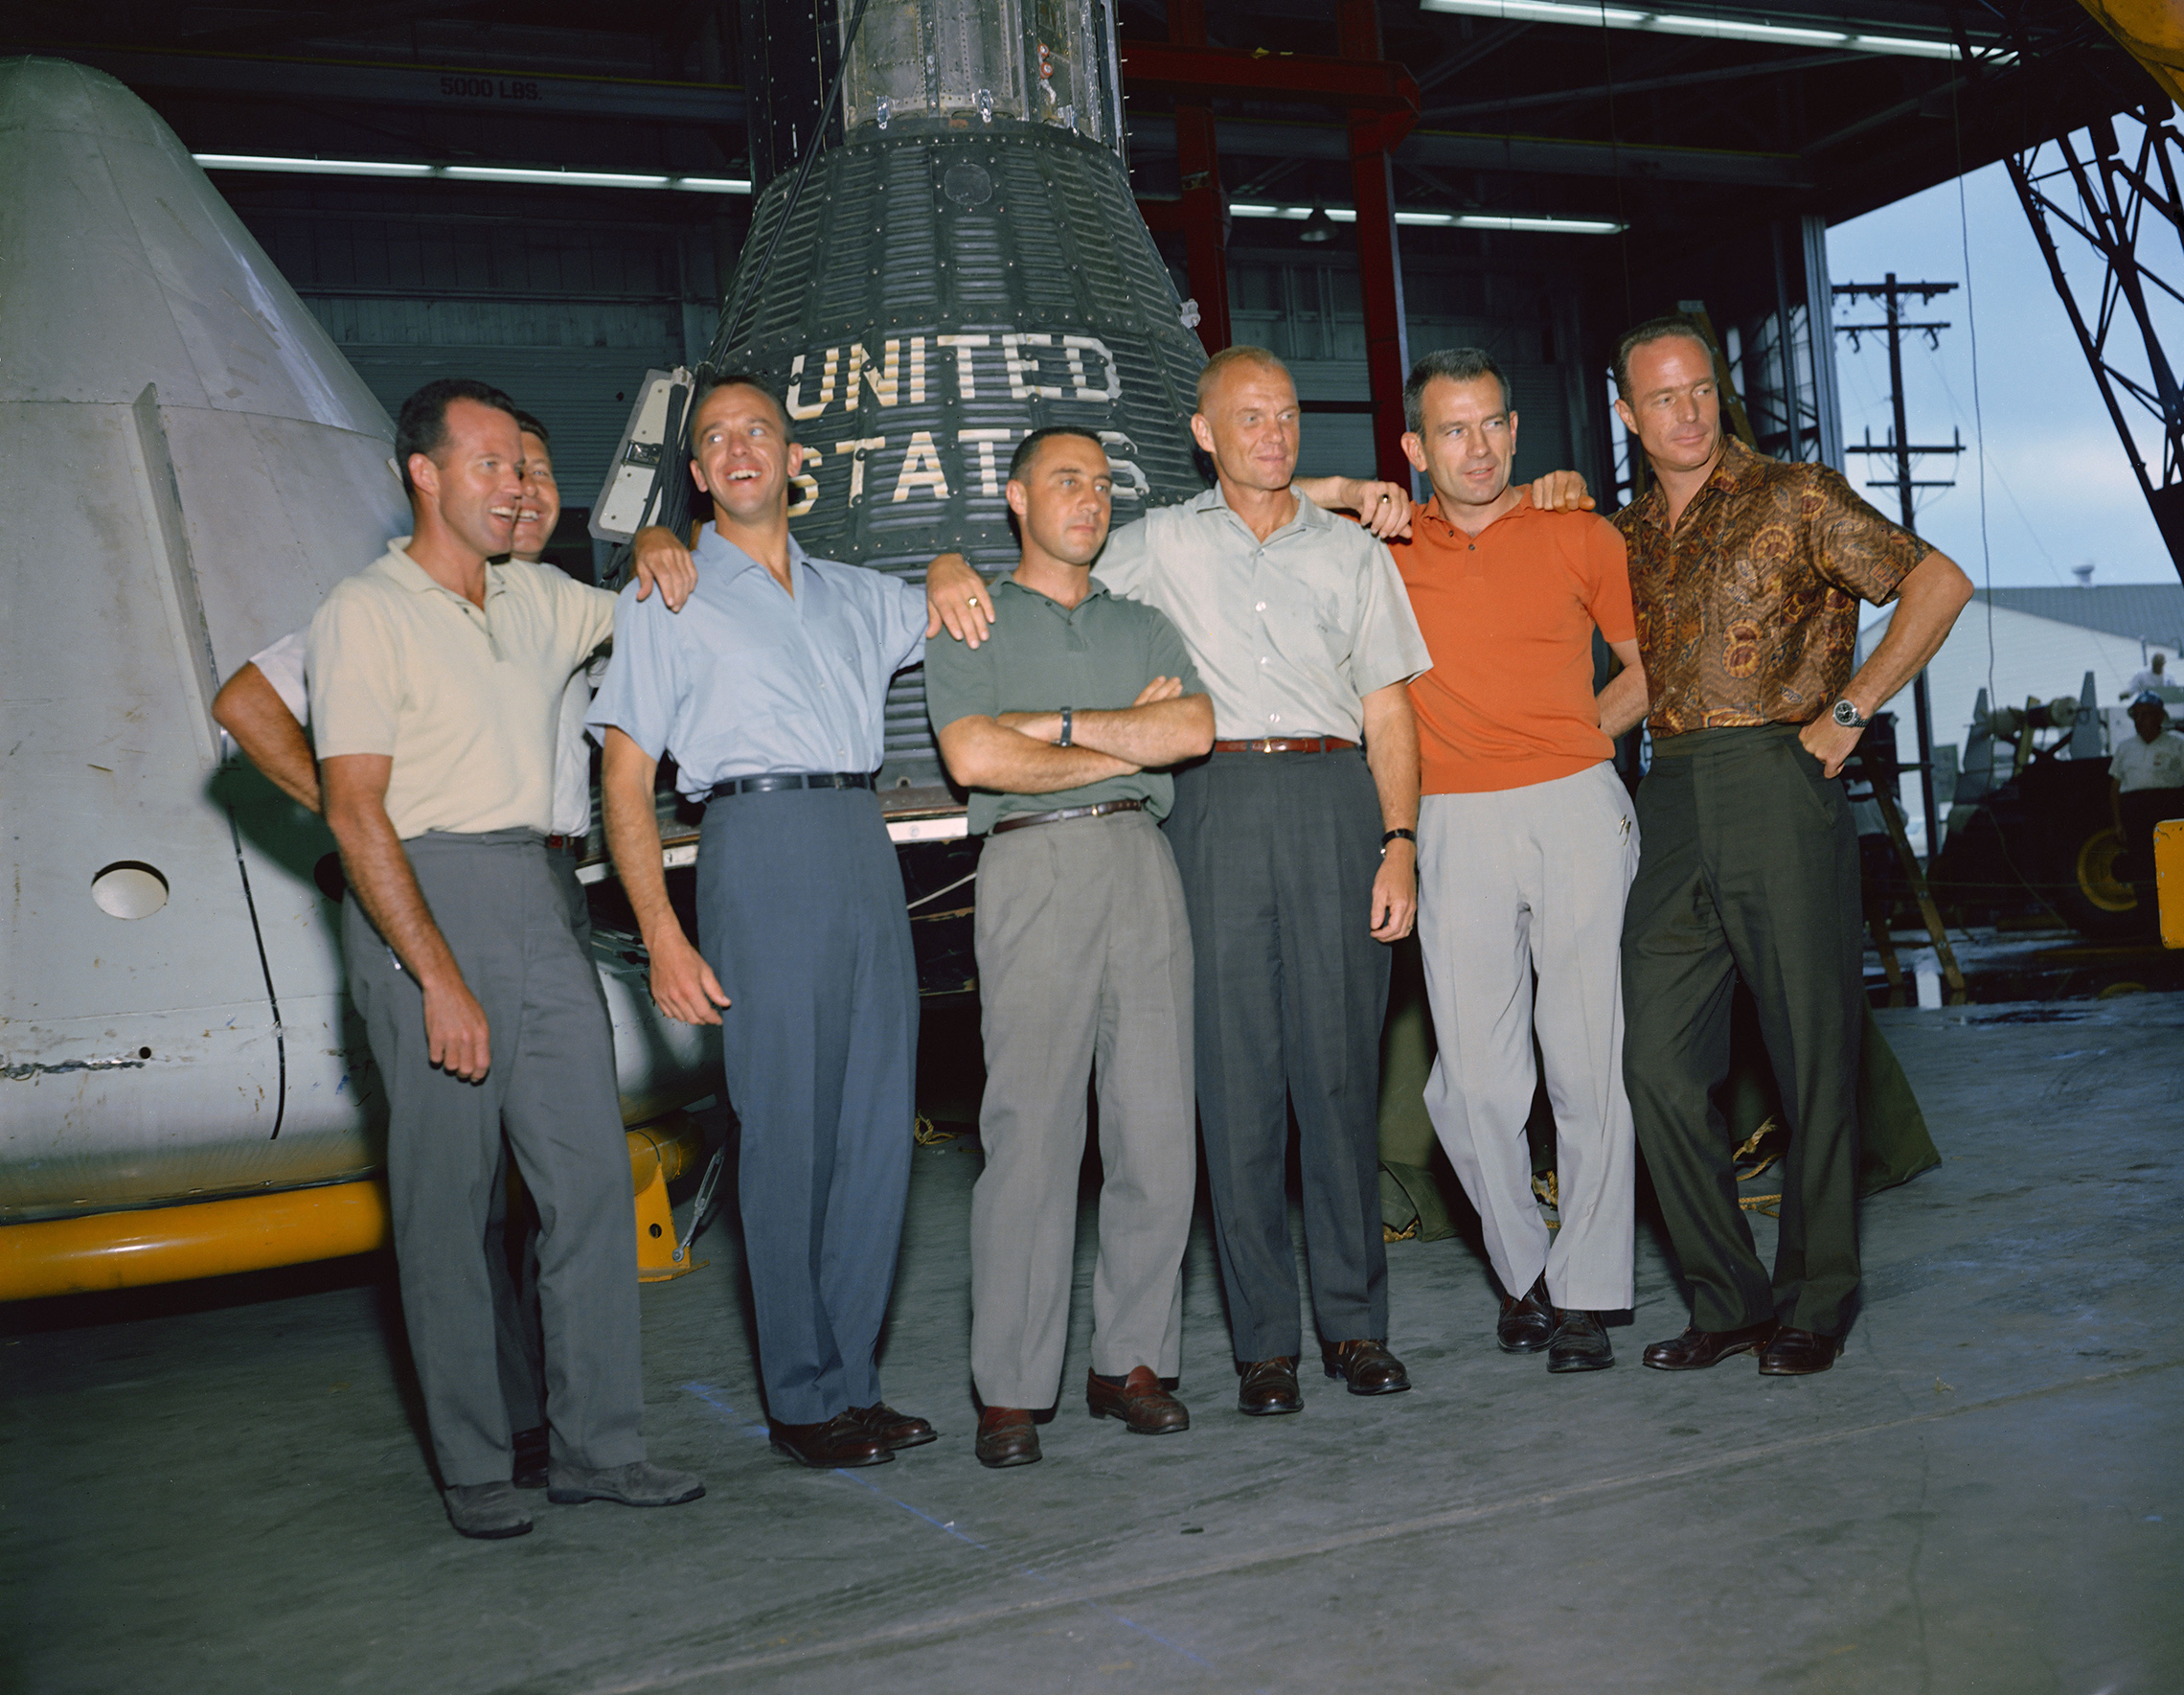 Em 9 de abril de 1959, da NASA, primeiro administrador, o Dr. Keith Glennan, anunciou os nomes da agência do primeiro grupo de astronautas em uma conferência de imprensa em Washington, D.C., Agora conhecido como o Original Sete, que incluiu três aviadores Navais, M. Scott Carpenter, Walter M. Schirra Jr. e Alan B. Shepard Jr.; três pilotos da Força Aérea, L. Gordon Cooper Jr., Virgil I. (Gus) Grissom, e Donald K. (Deke) Slayton; juntamente com o aviador do corpo de Fuzileiros Navais John H. Glenn Jr., esta foto de grupo dos astronautas originais do Mercury foi tirada em junho de 1963 no centro espacial tripulado (MSC), agora Centro Espacial Johnson, em Houston, Texas. Os astronautas são, da esquerda para a direita: Cooper, Schirra, Shepard, Grissom, Glenn, Slayton e Carpenter. O Projeto Mercury tornou-se o primeiro grande empreendimento da NASA. Os objetivos do programa eram colocar uma espaçonave de nível humano em órbita ao redor da Terra, observar o desempenho dos astronautas em tais condições e recuperar com segurança o astronauta e a espaçonave. Os voos Mercury provaram que os seres humanos poderiam viver e trabalhar no espaço, e pavimentaram o caminho para os programas Gemini e Apollo, bem como para todos os outros voos espaciais humanos. (NASA)'s first administrator, Dr. Keith Glennan, announced the names of the agency's first group of astronauts at a news conference in Washington, D.C. Now known as the "Original Seven," they included three Naval aviators, M. Scott Carpenter, Walter M. Schirra Jr., and Alan B. Shepard Jr.; three Air Force pilots, L. Gordon Cooper Jr., Virgil I. (Gus) Grissom, and Donald K. (Deke) Slayton; along with Marine Corps aviator John H. Glenn Jr. This group photo of the original Mercury astronauts was taken in June 1963 at the Manned Spacecraft Center (MSC), now Johnson Space Center, in Houston, Texas. The astronauts are, left to right: Cooper, Schirra, Shepard, Grissom, Glenn, Slayton and Carpenter. Project Mercury became NASA's first major undertaking. The objectives of the program were to place a human-rated spacecraft into orbit around Earth, observe the astronauts' performance in such conditions and safely recover the astronaut and the spacecraft. The Mercury flights proved that humans could live and work in space, and paved the way for the Gemini and Apollo programs as well as for all further human spaceflight. (NASA)